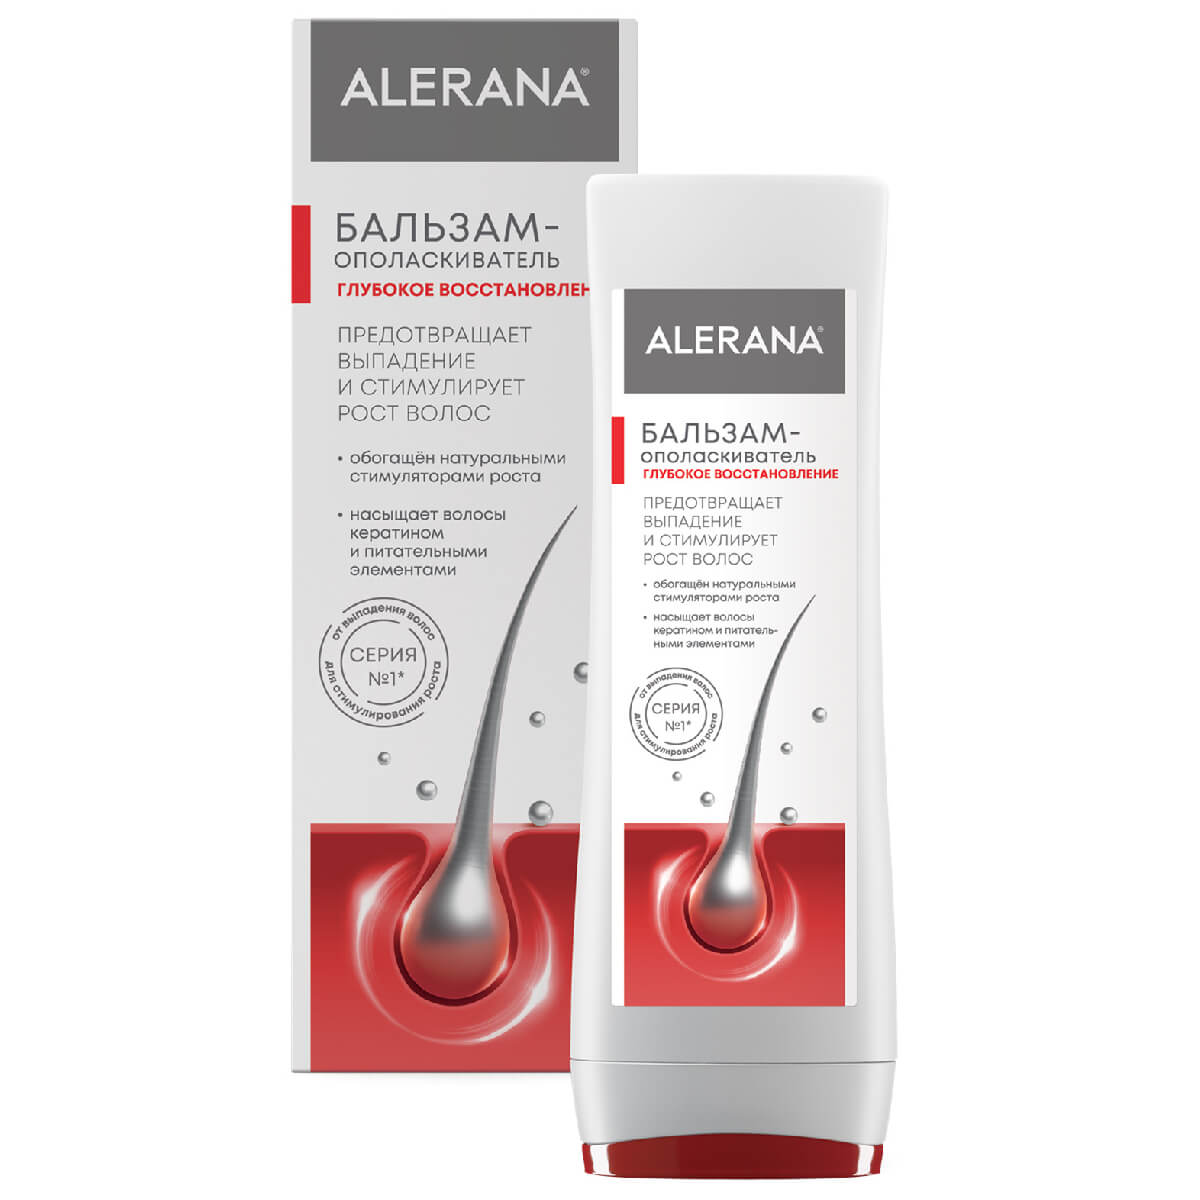 Бальзам-ополаскиватель для волос Глубокое восстановление, 200 мл, Alerana - фото 1